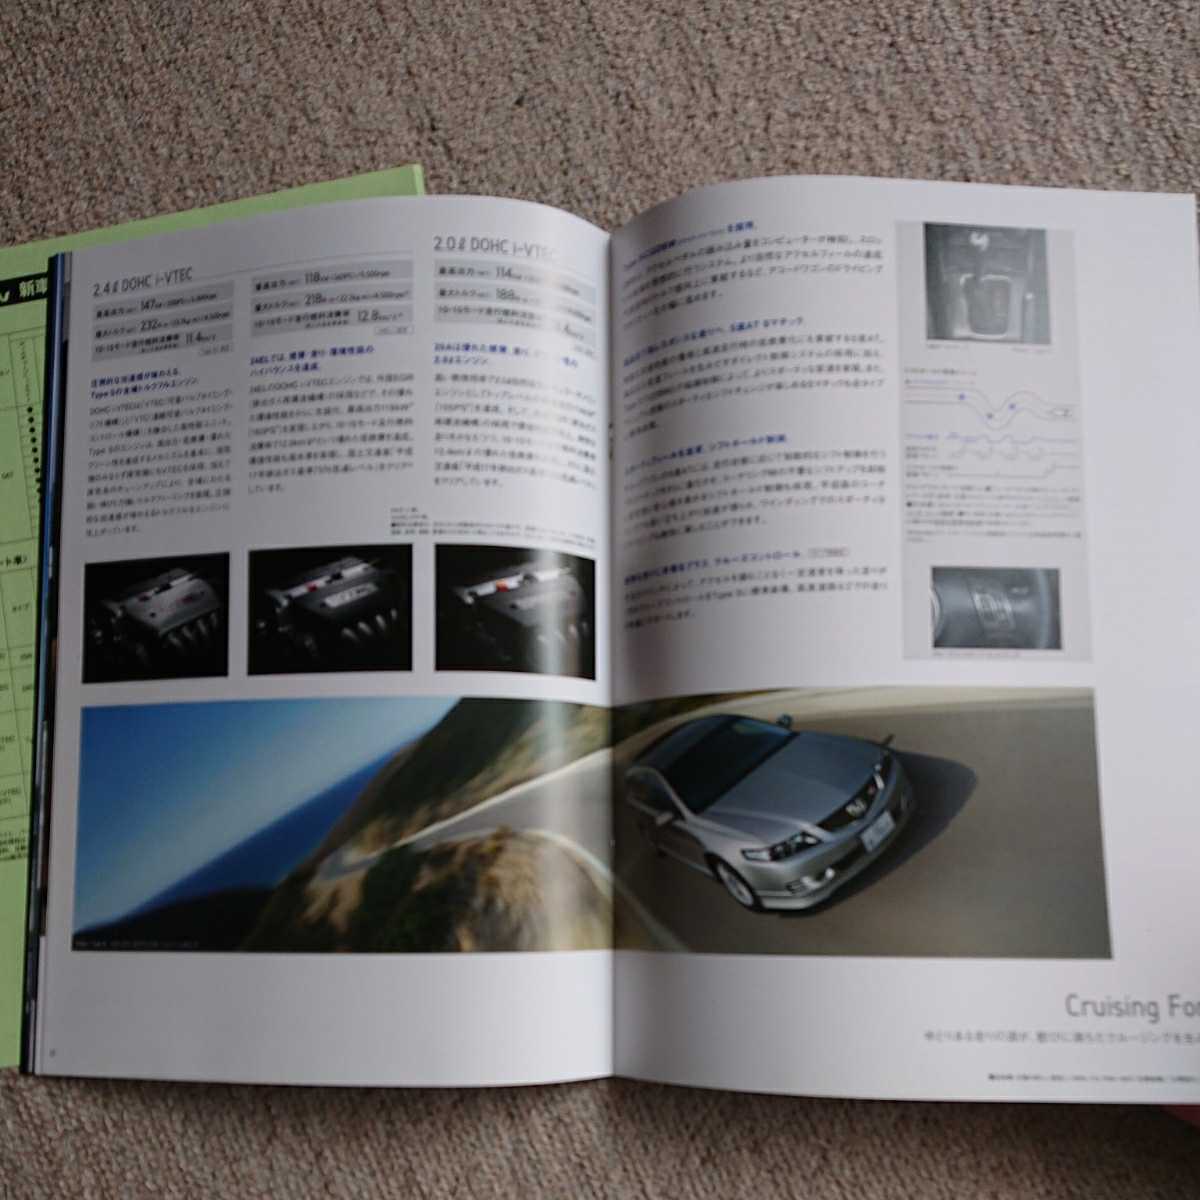  снят с производства,2006 год 10 месяц выпуск, модель ABA-CM1,CM2 CM3. Honda Accord Wagon, основной каталог, таблица цен комплект.